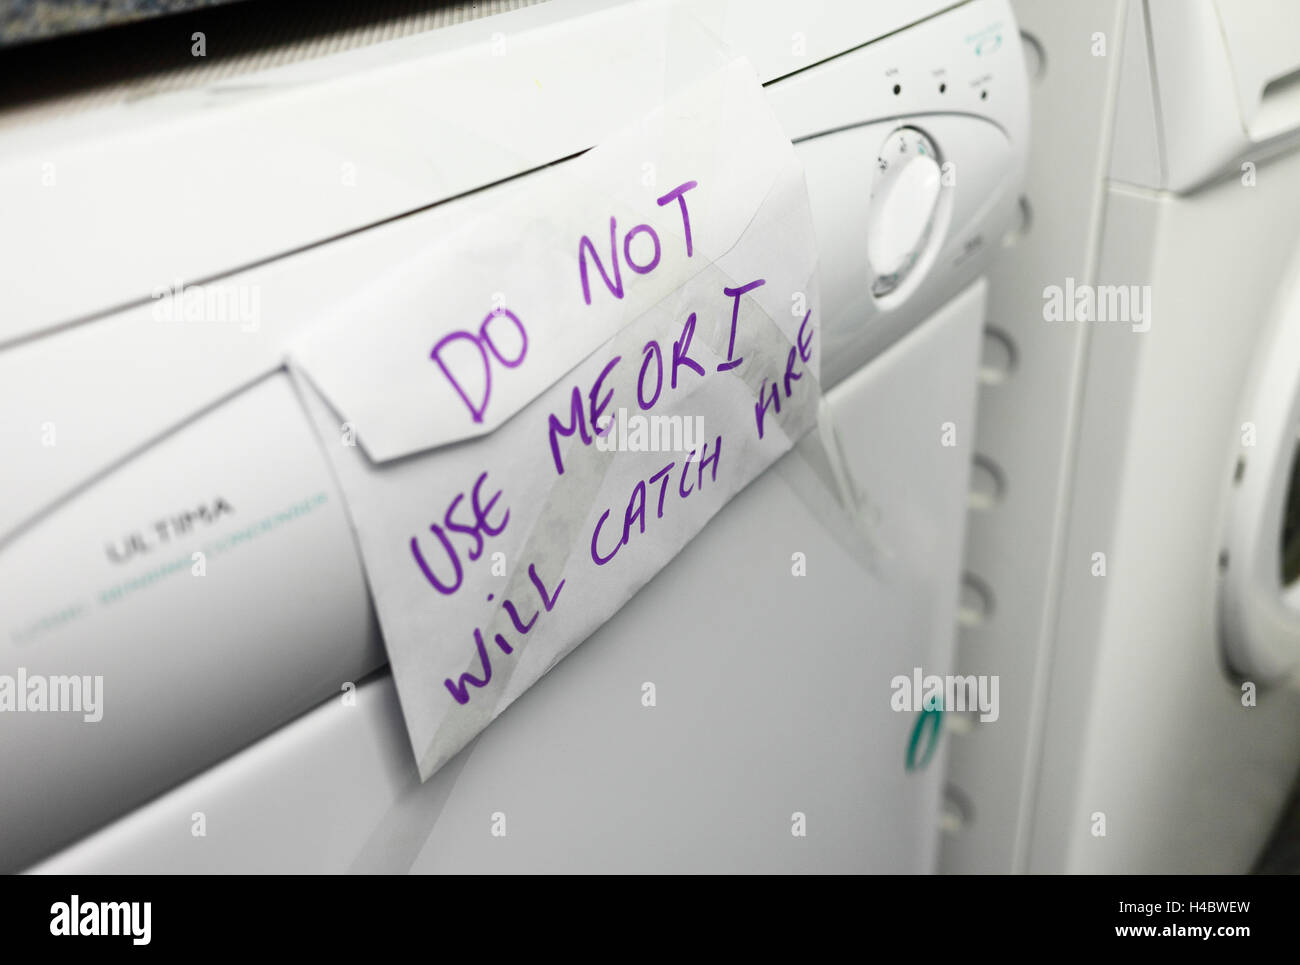 Fehlerhafte Wäschetrockner mit einem Warnhinweis nicht zu verwenden. Stockfoto